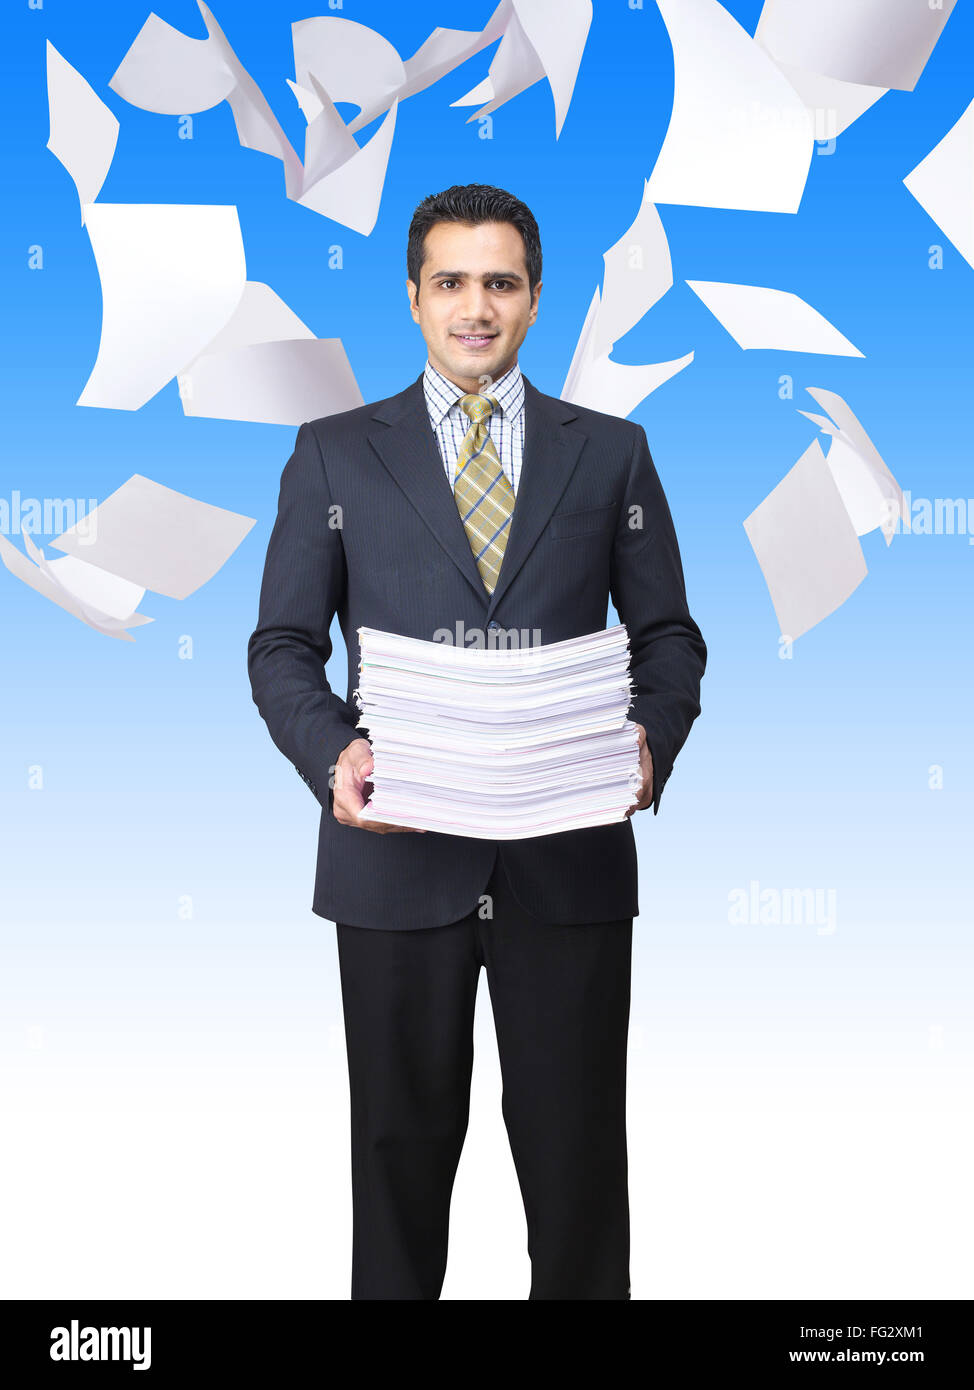 Vol de documents autour de la holding pile de papier MR# 779K Banque D'Images